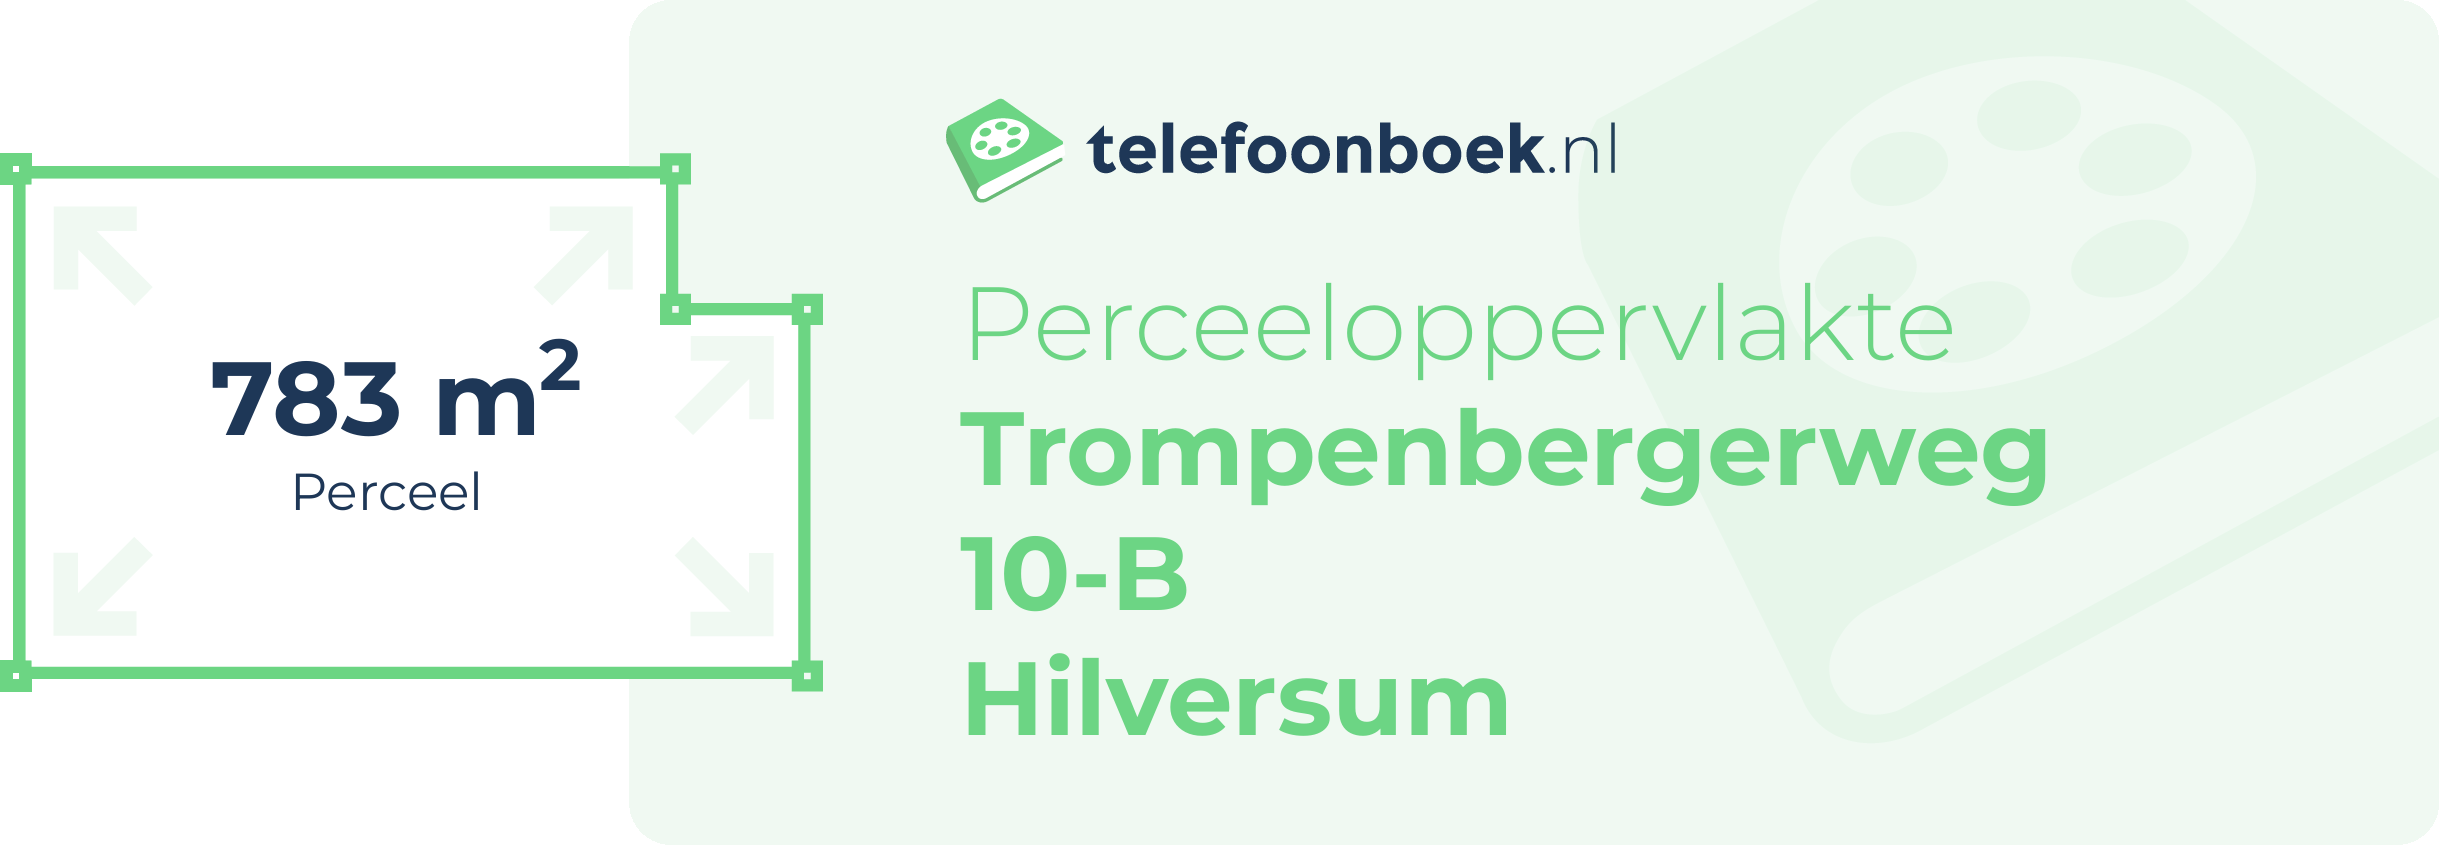 Perceeloppervlakte Trompenbergerweg 10-B Hilversum